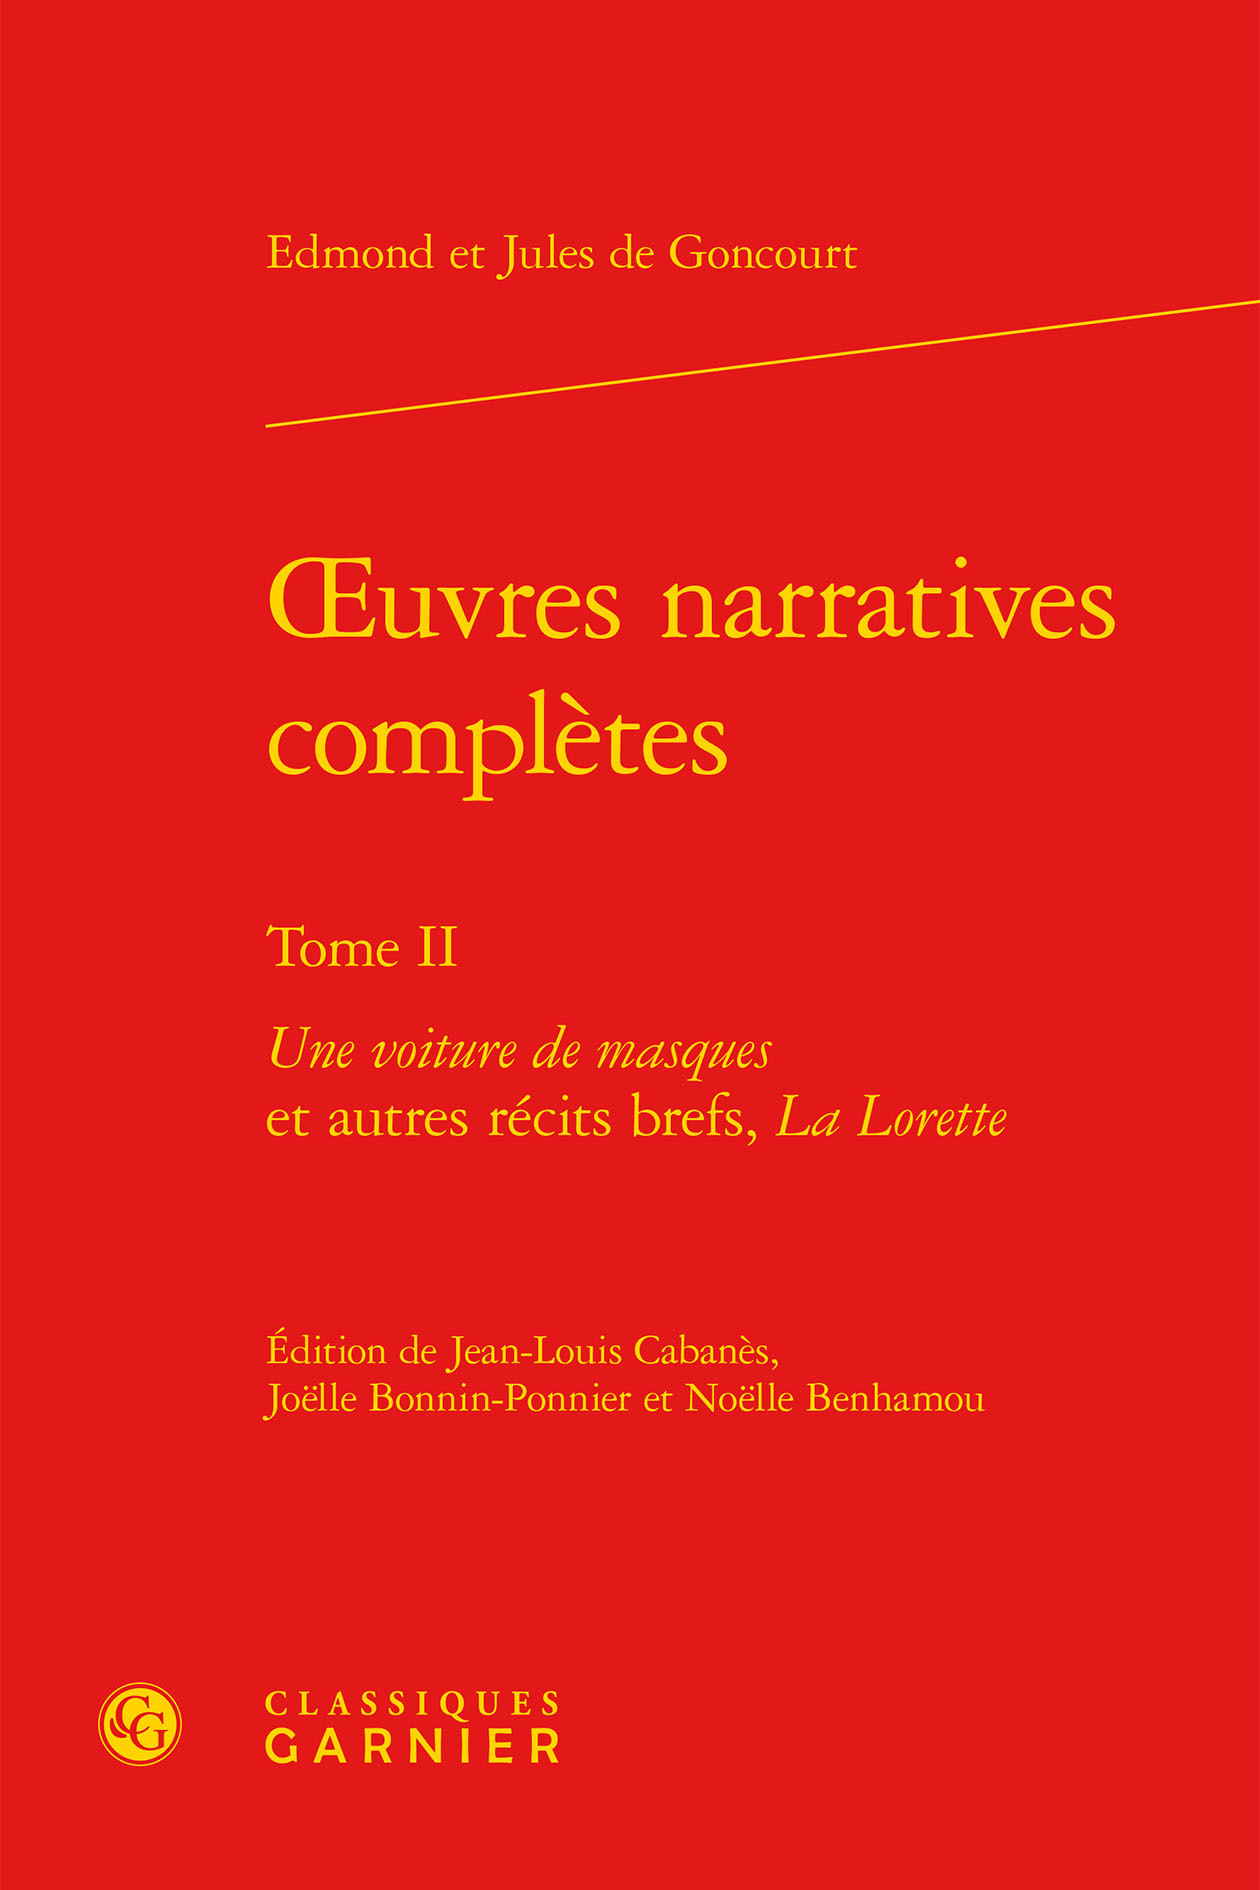 oeuvres narratives complètes, Une voiture de masques et autres récits brefs, La Lorette (9782812420641-front-cover)